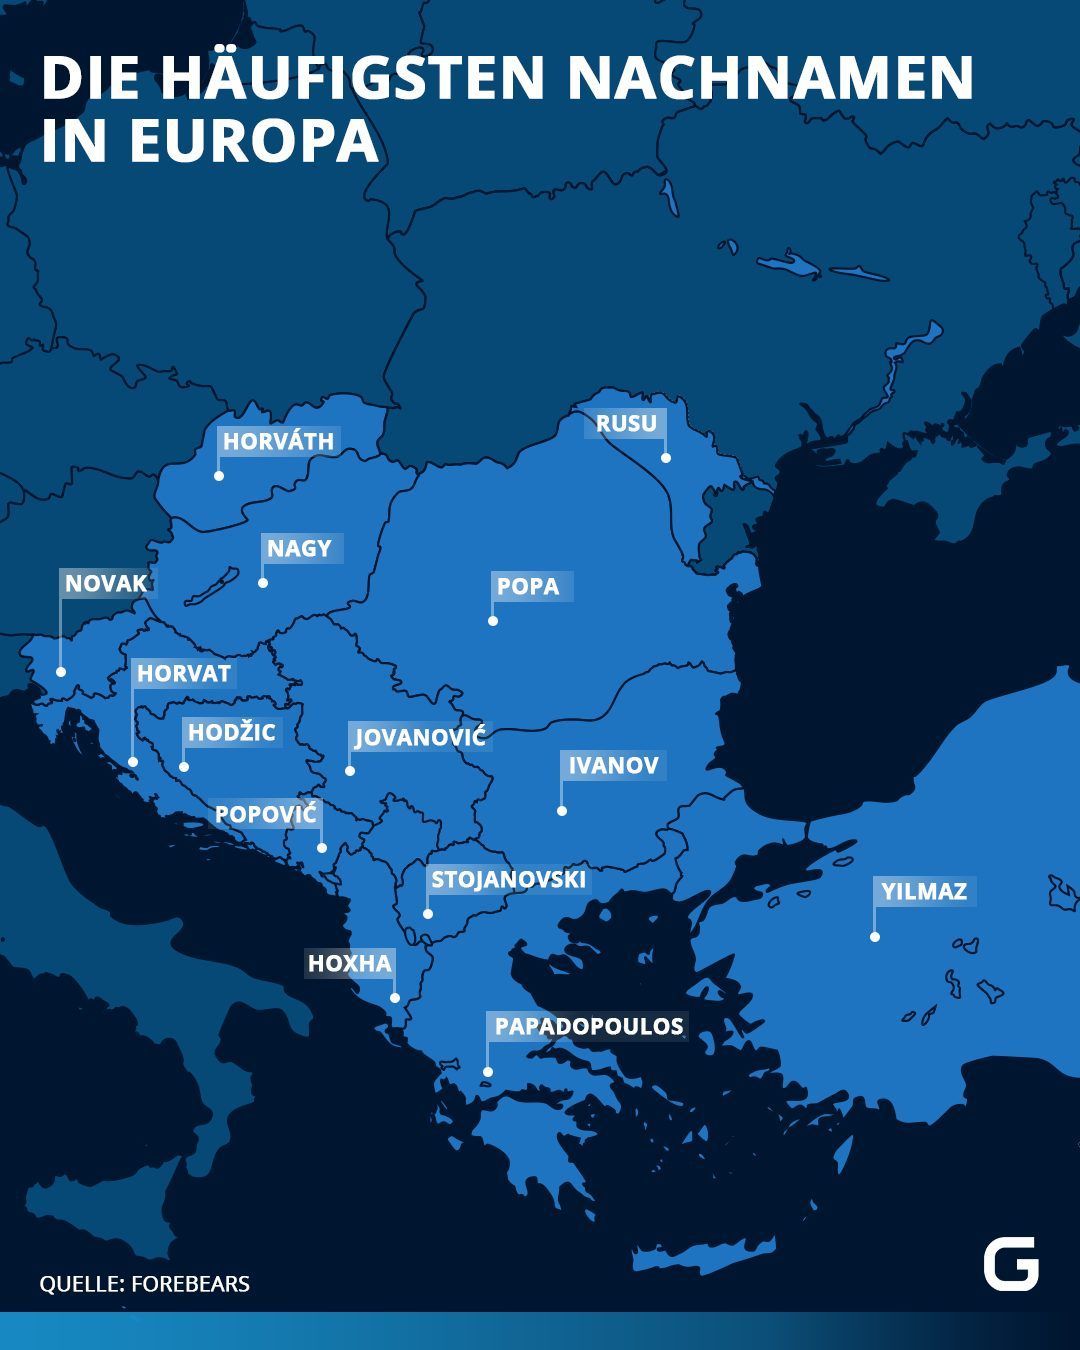 Die häufigsten Nachnamen in Europa unterteilt nach Ländern.